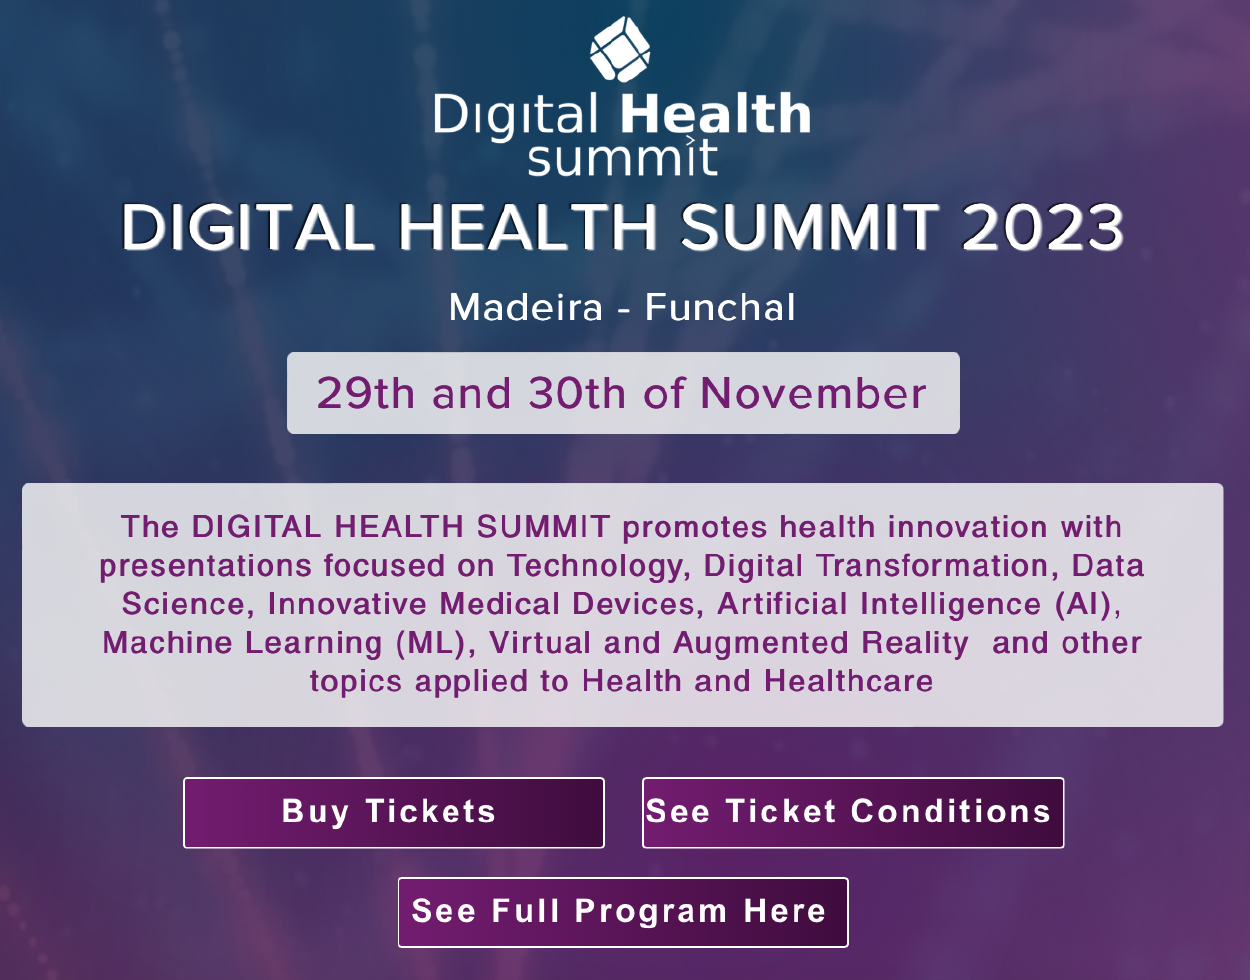 Madeira acolhe 4ª Edição do Digital Health Summit 2023